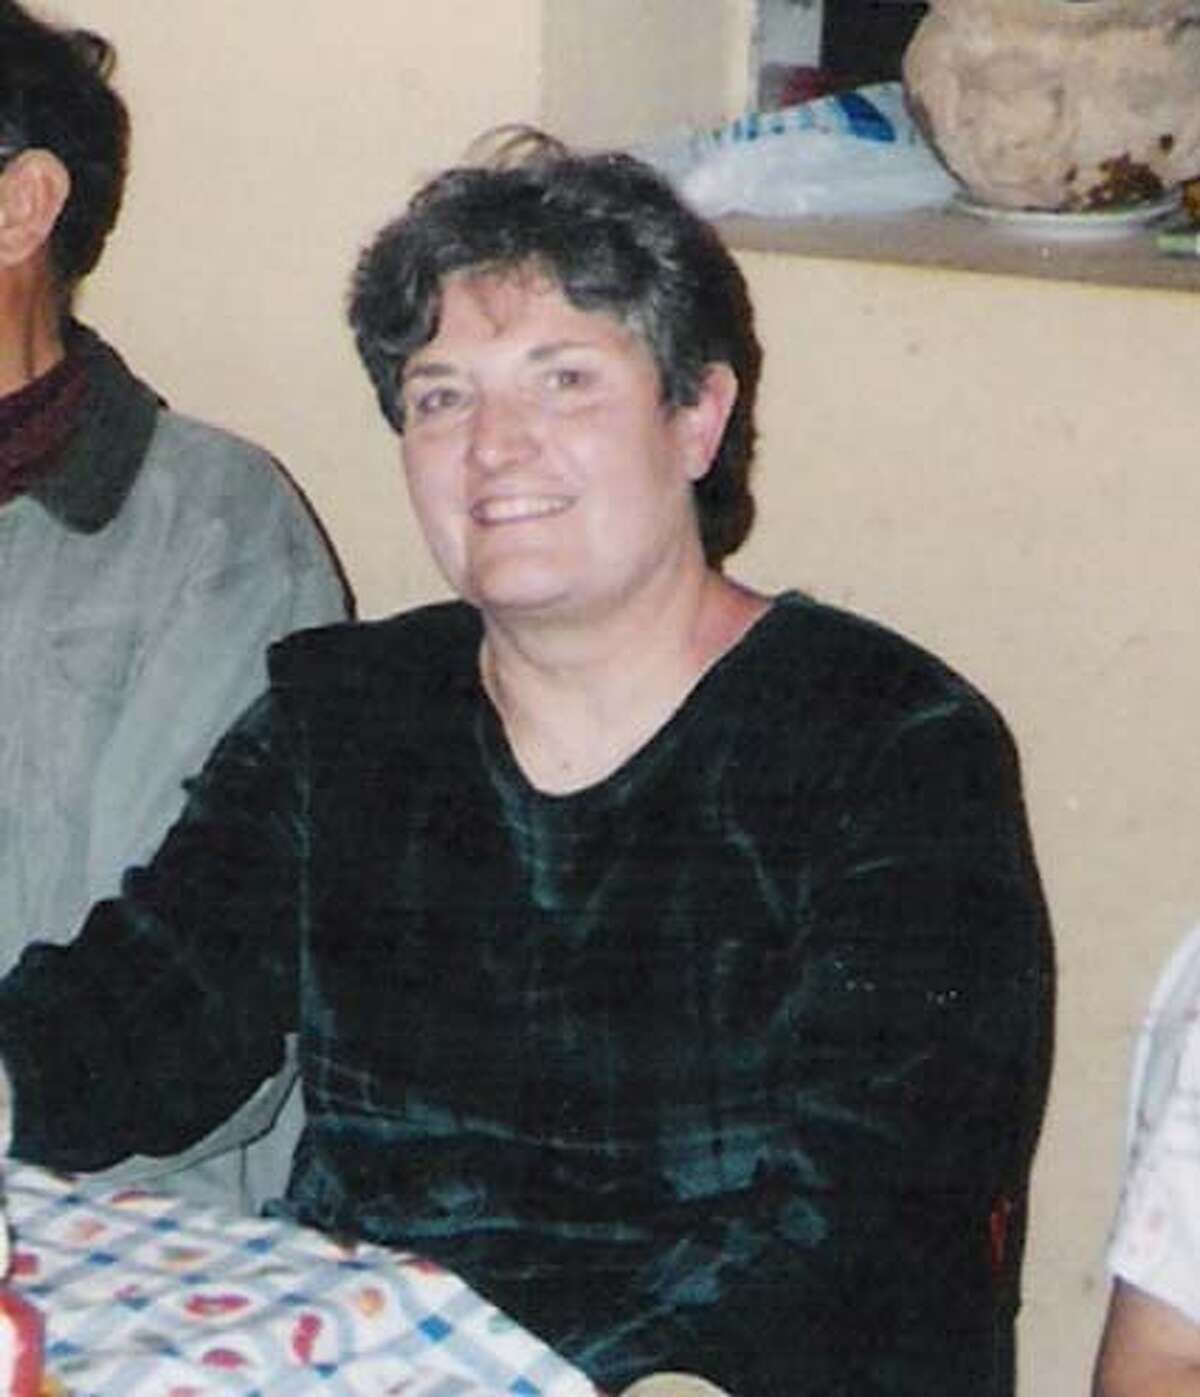 Obituary photo of Nancy Salas.